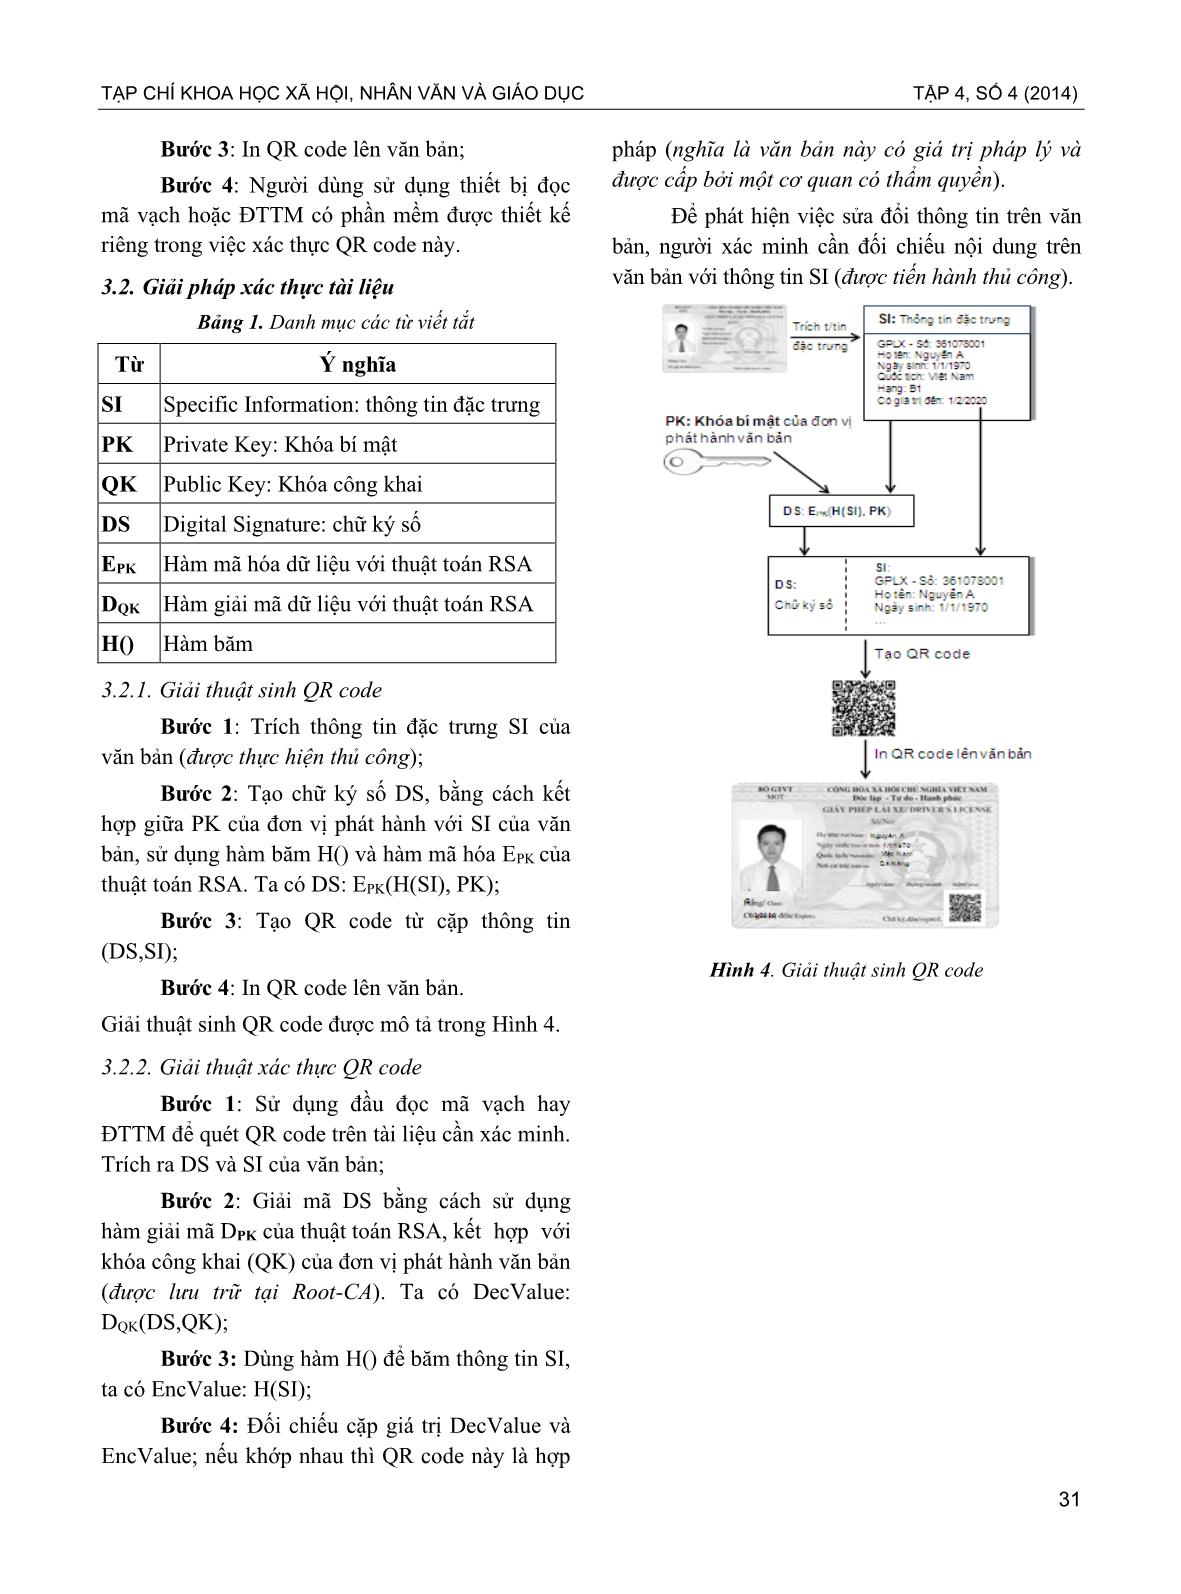 Ứng dụng mã qr và chữ ký số trong phòng chống giả mạo văn bằng, chứng chỉ ở dạng bản in trang 4